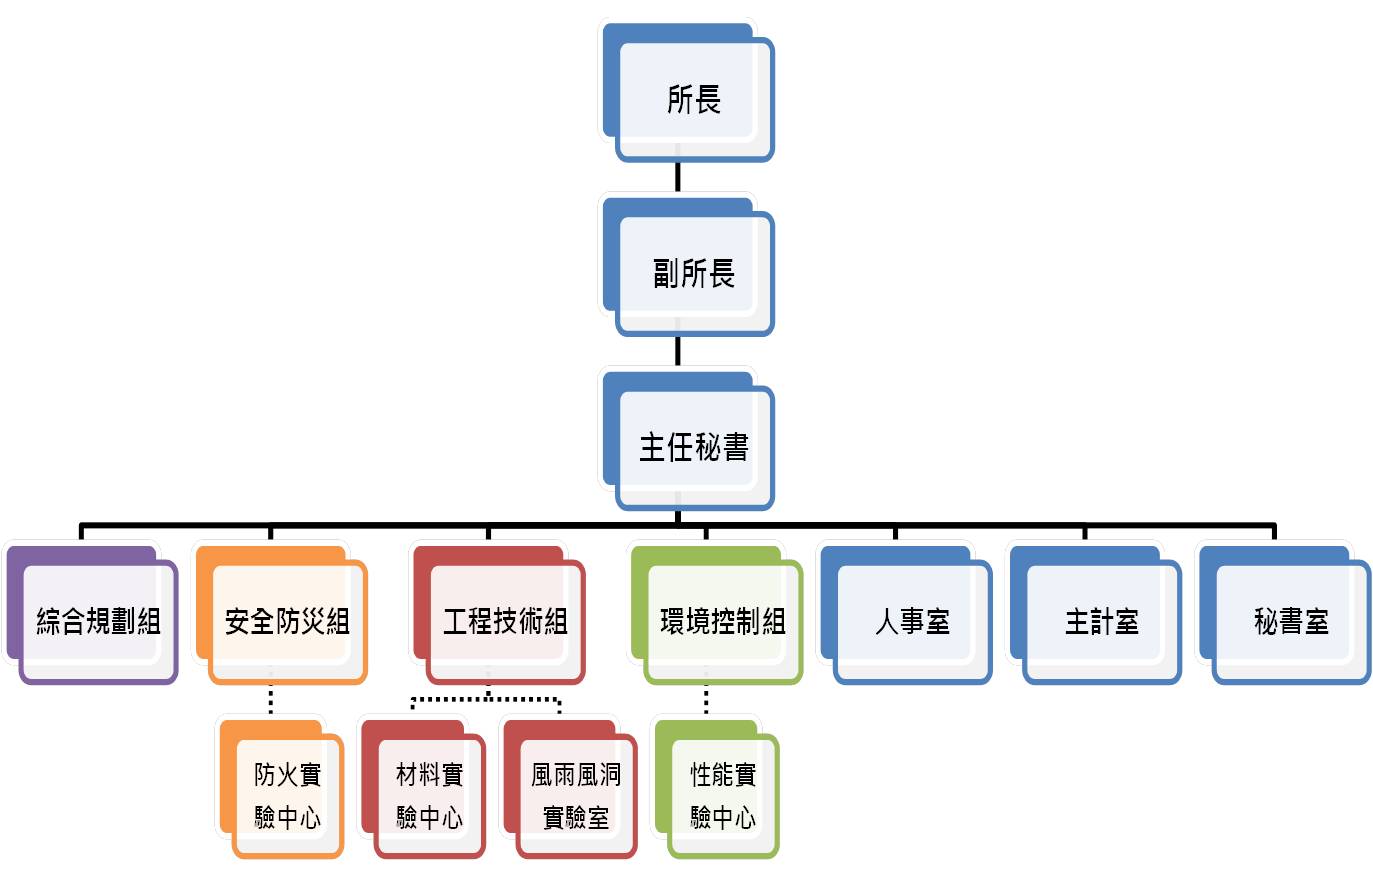 圖1 本所組織架構圖